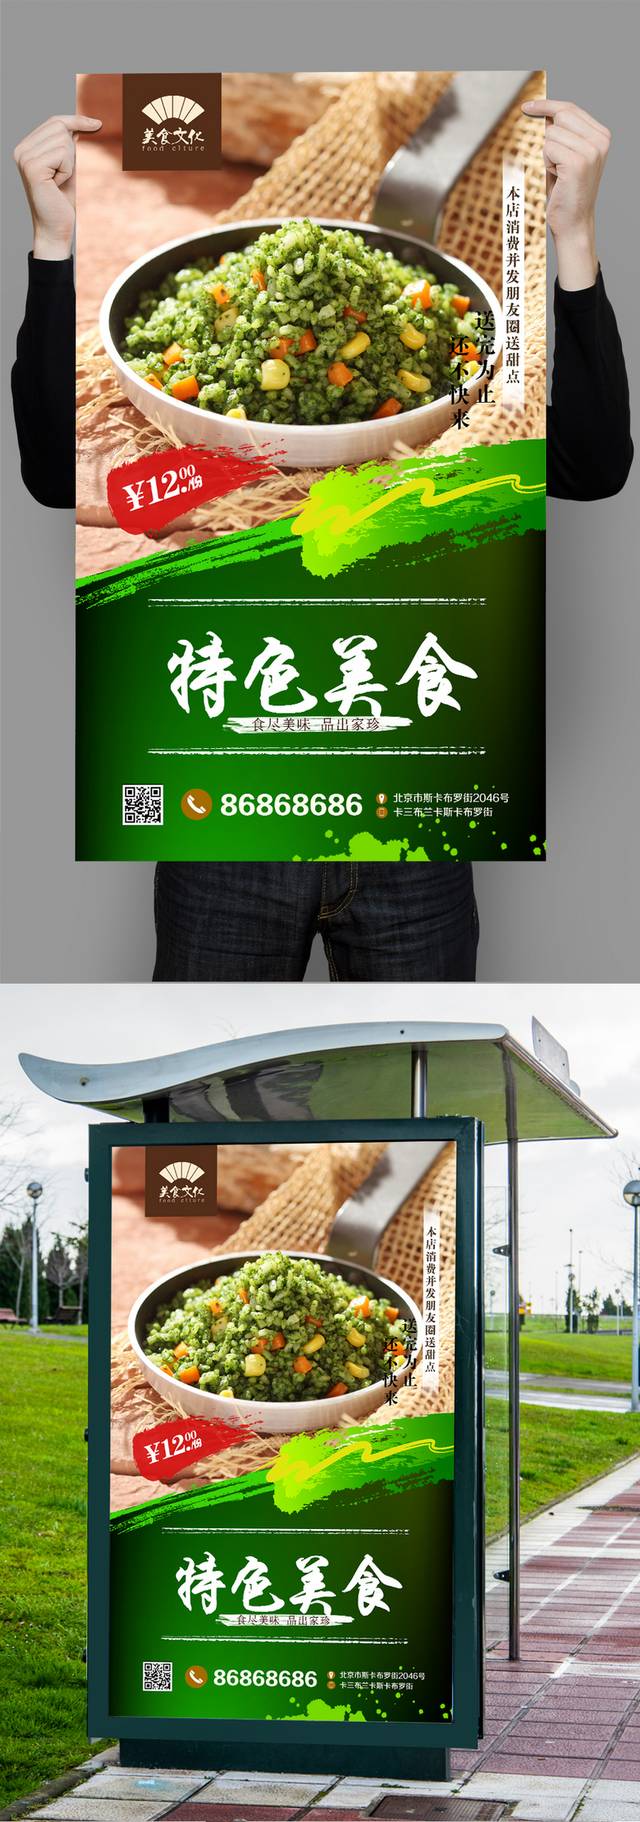 经典绿色日本炒饭宣传海报设计psd